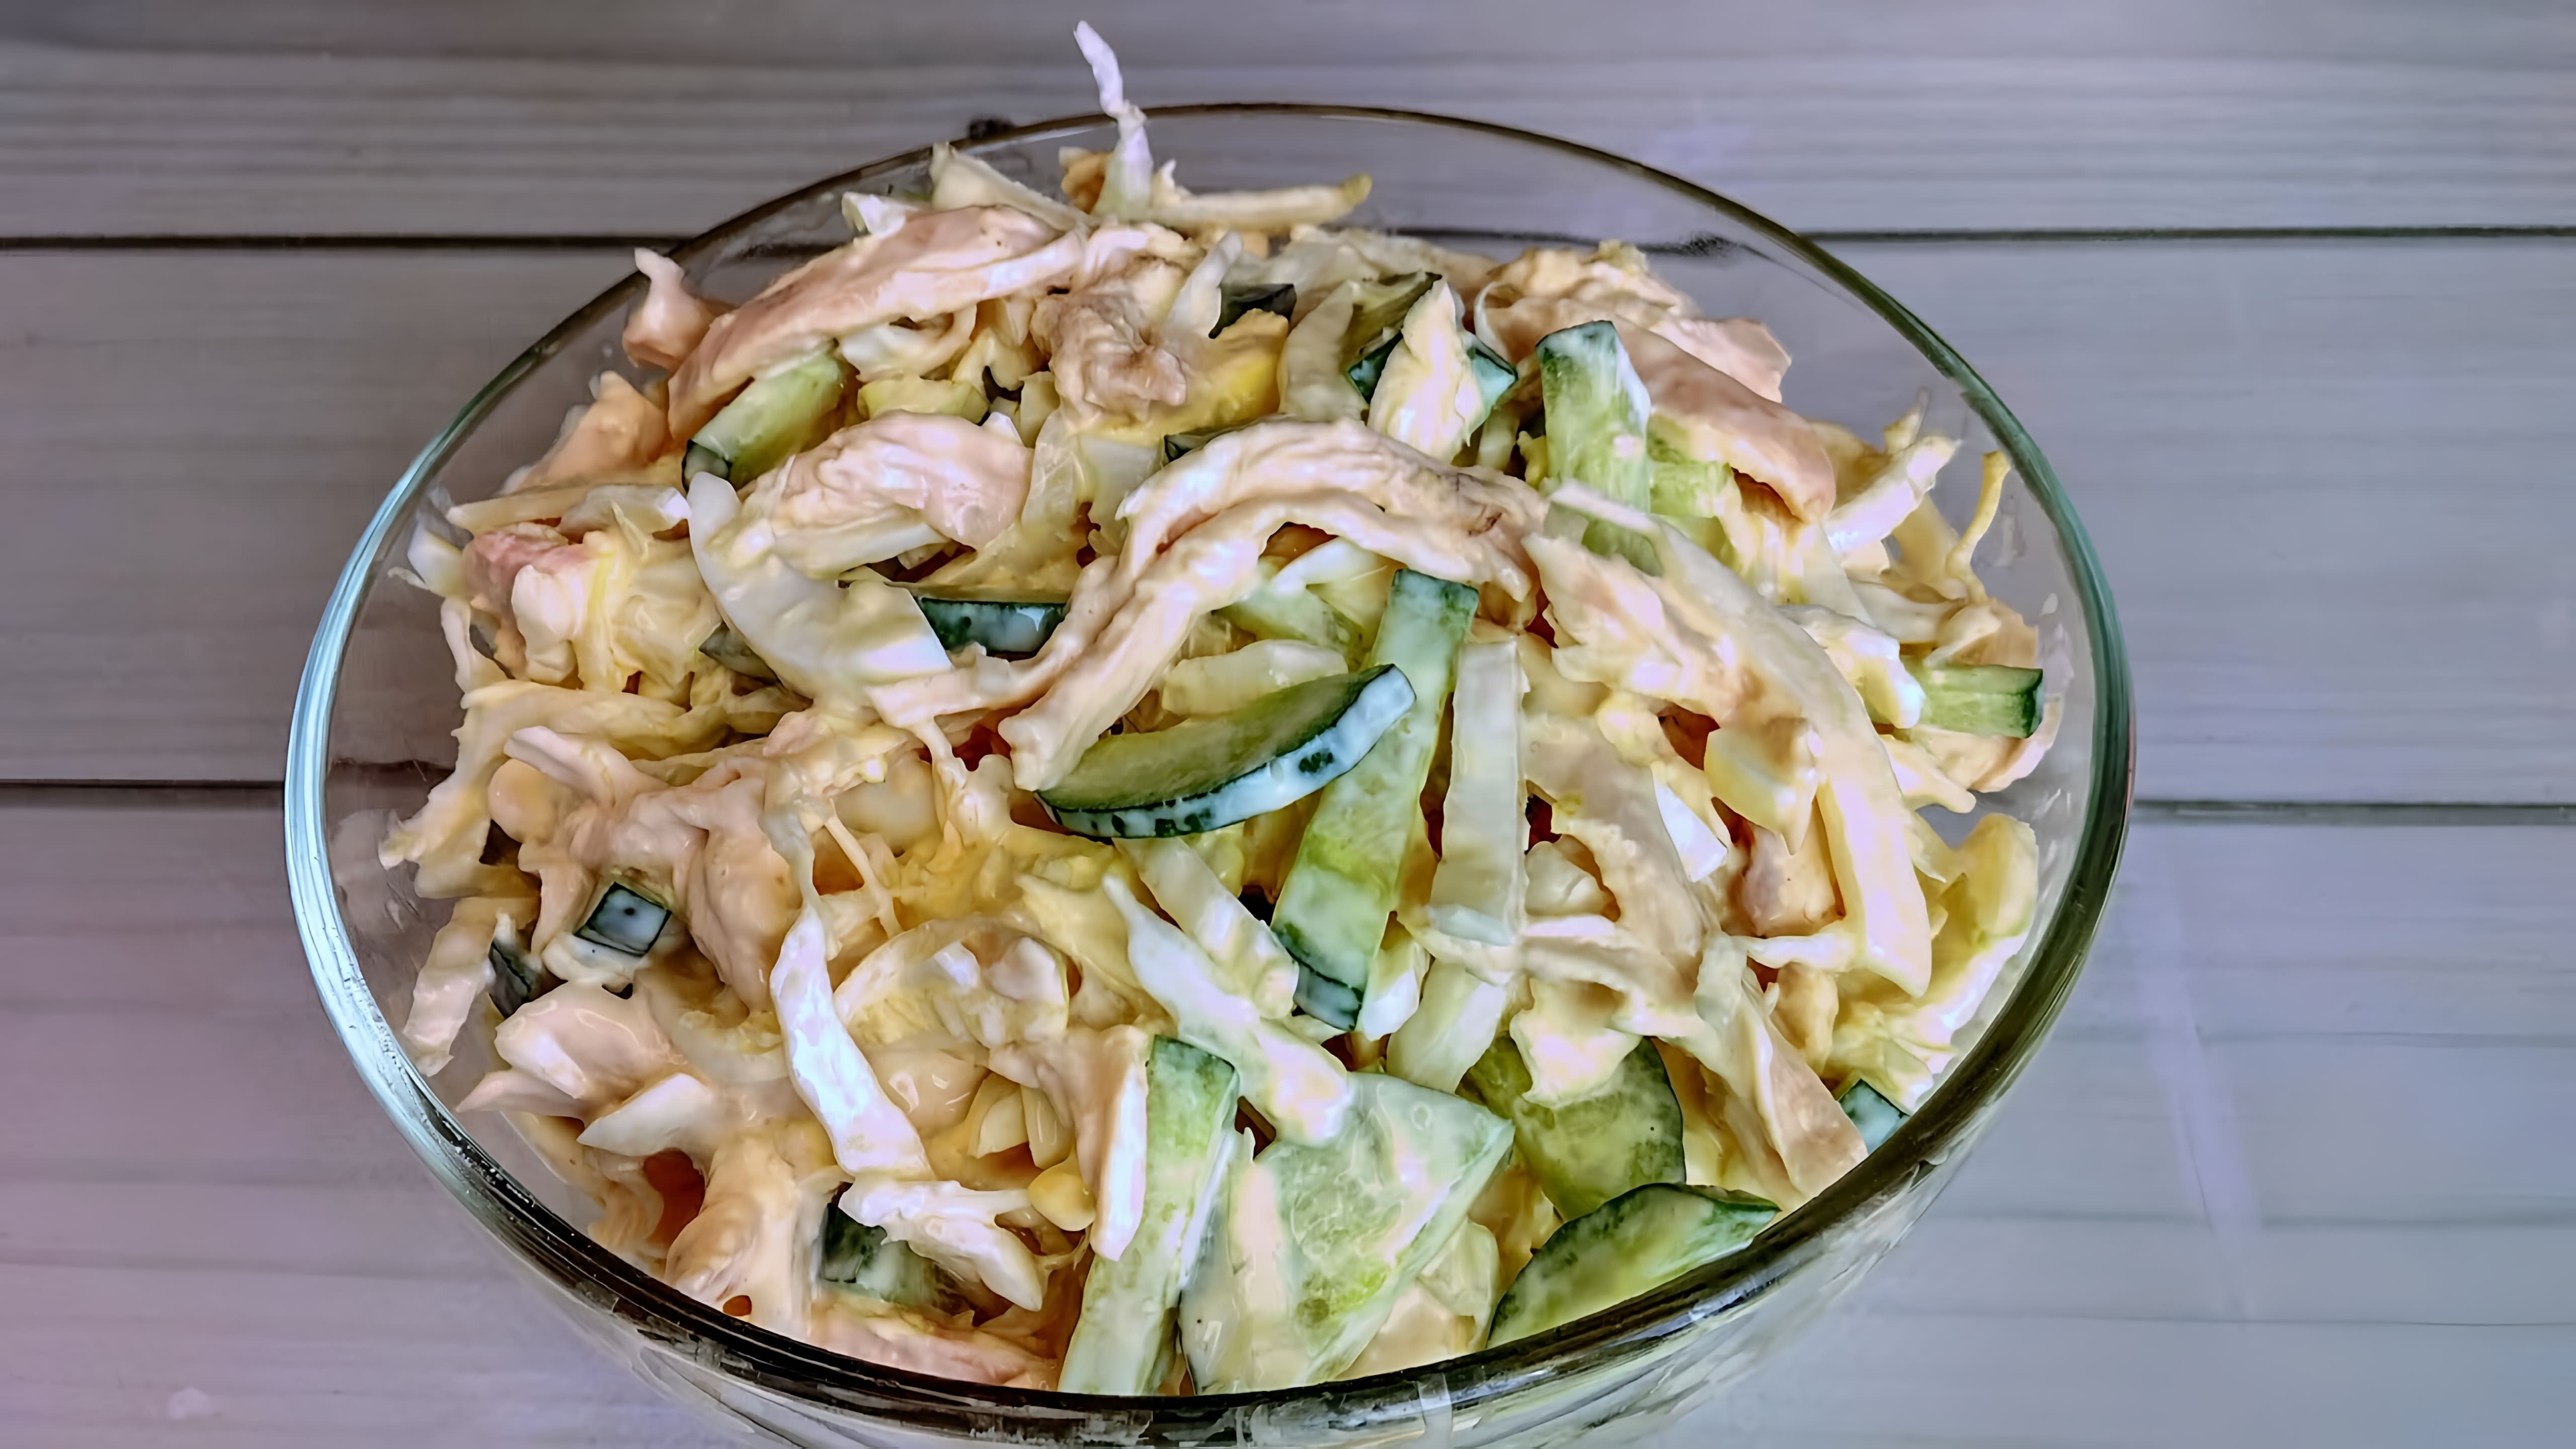 Салат "Обалденный" из пекинской капусты с куриной грудкой - это простое и вкусное блюдо, которое можно приготовить за короткое время